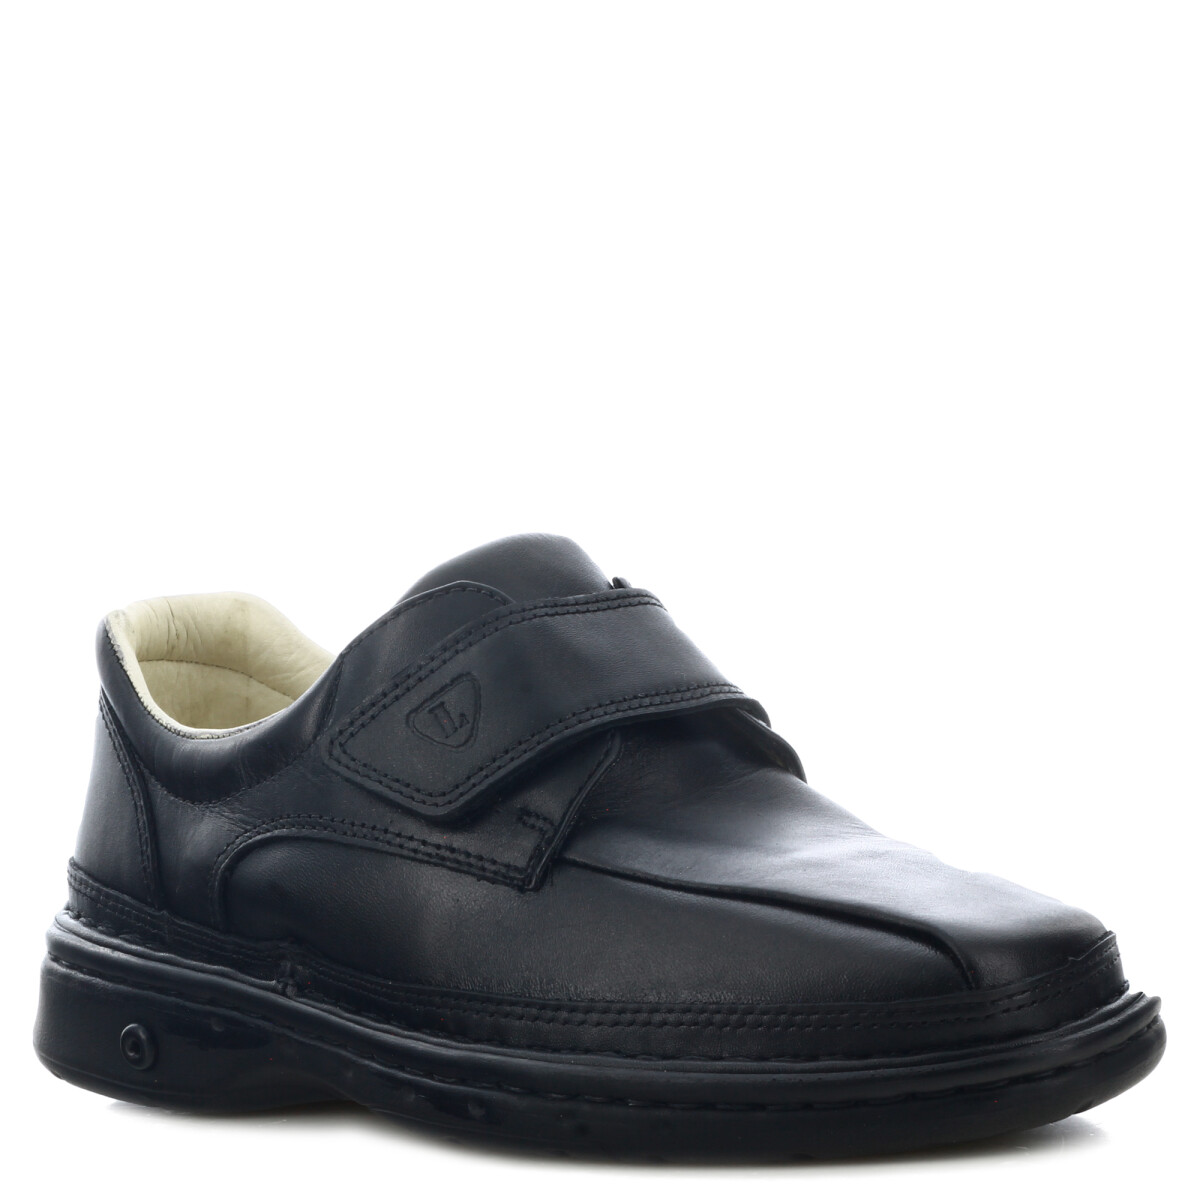 Zapato casual Diabetico Lombardino - Negro 